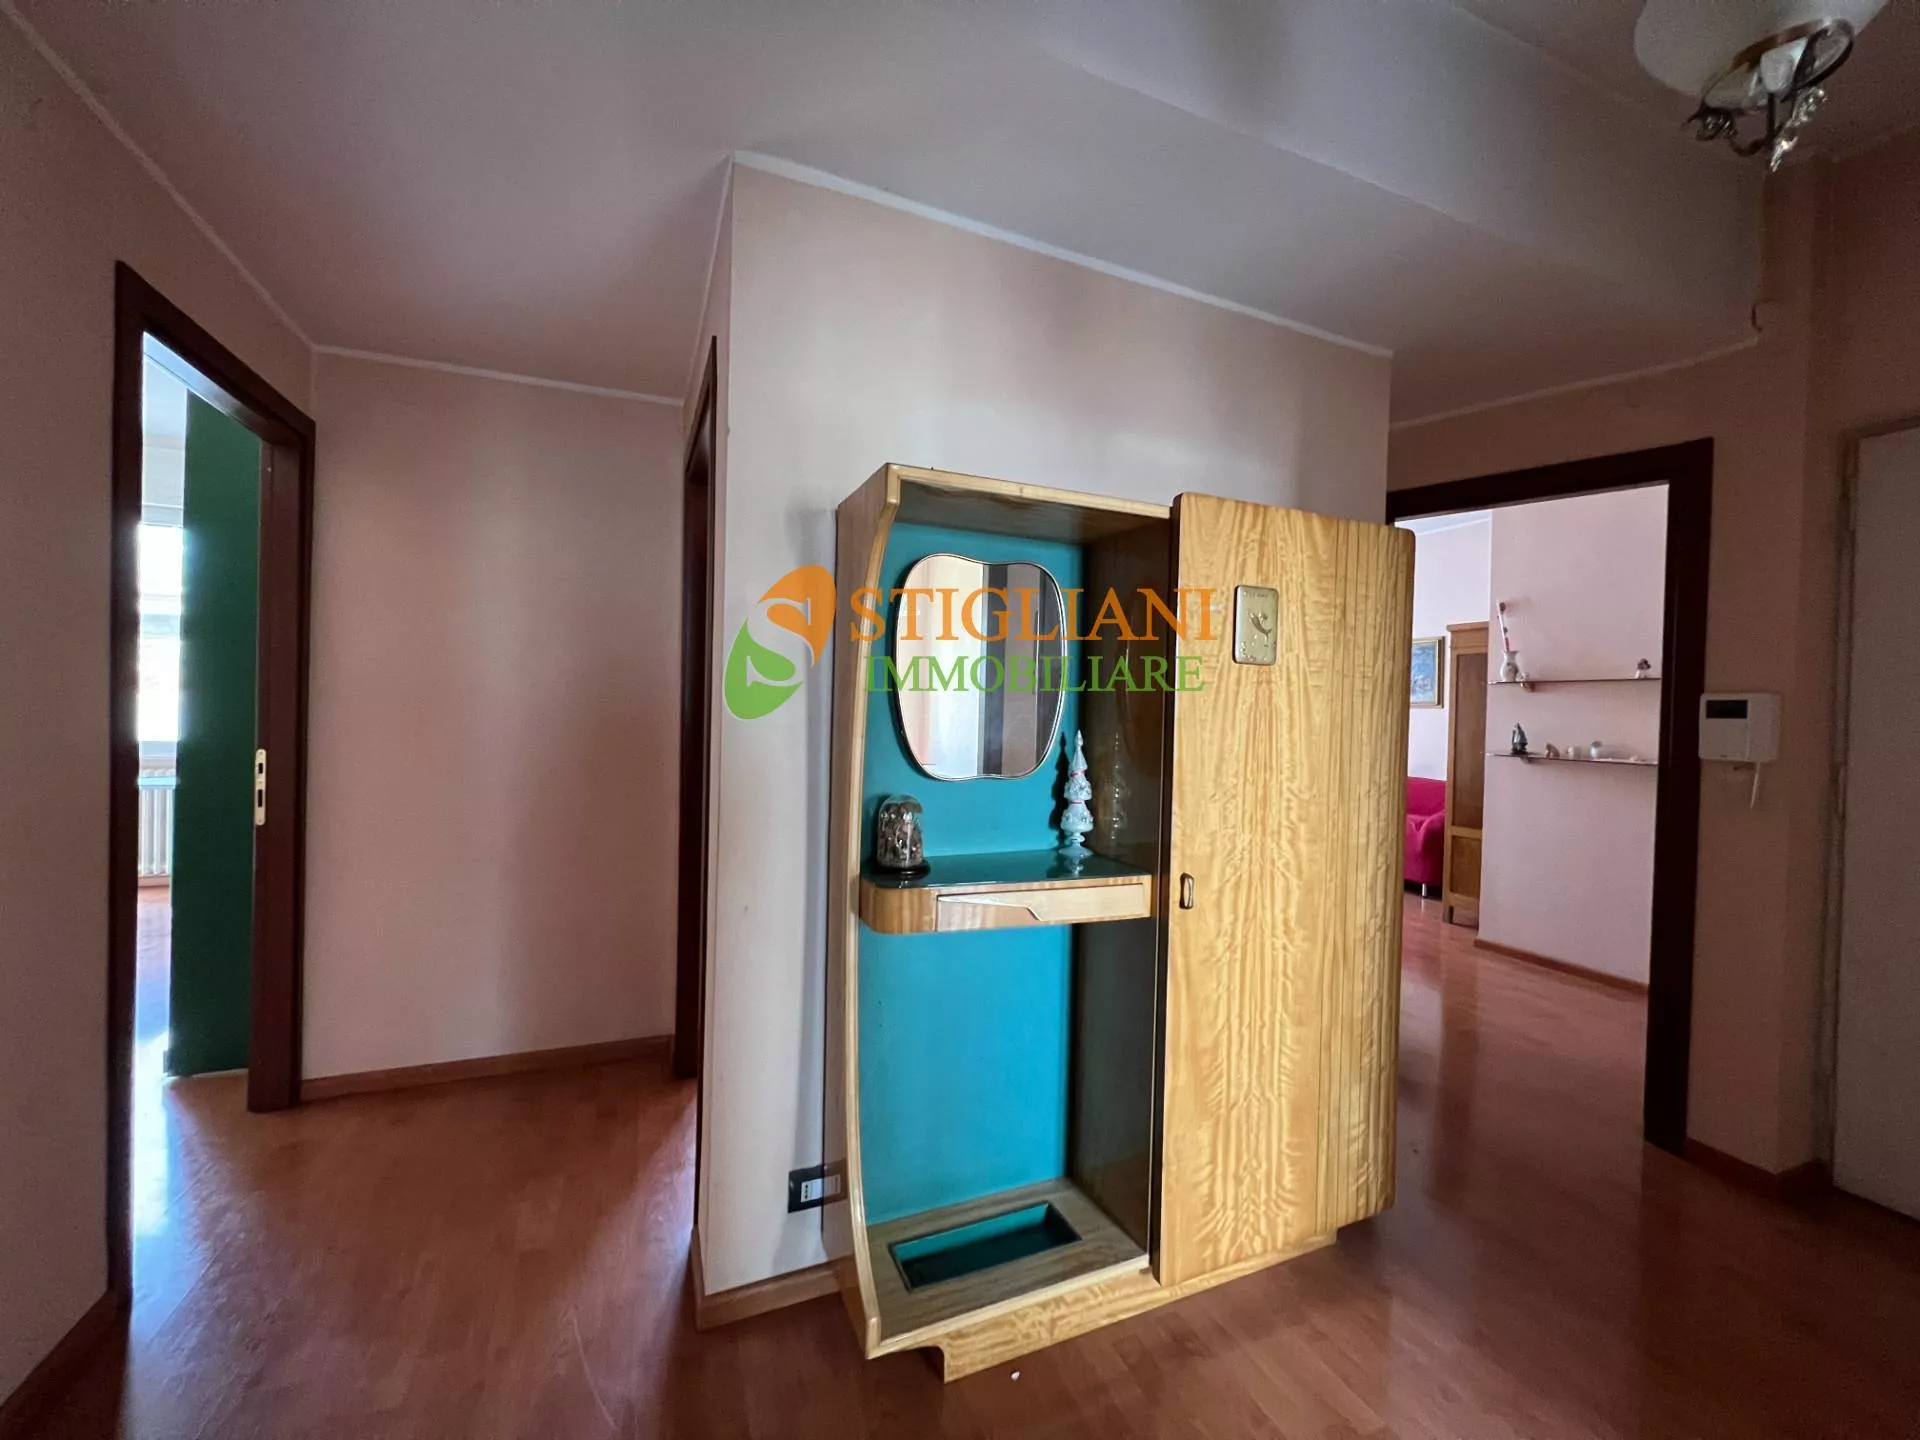 Immagine per Appartamento in vendita a Campobasso Via Mazzini